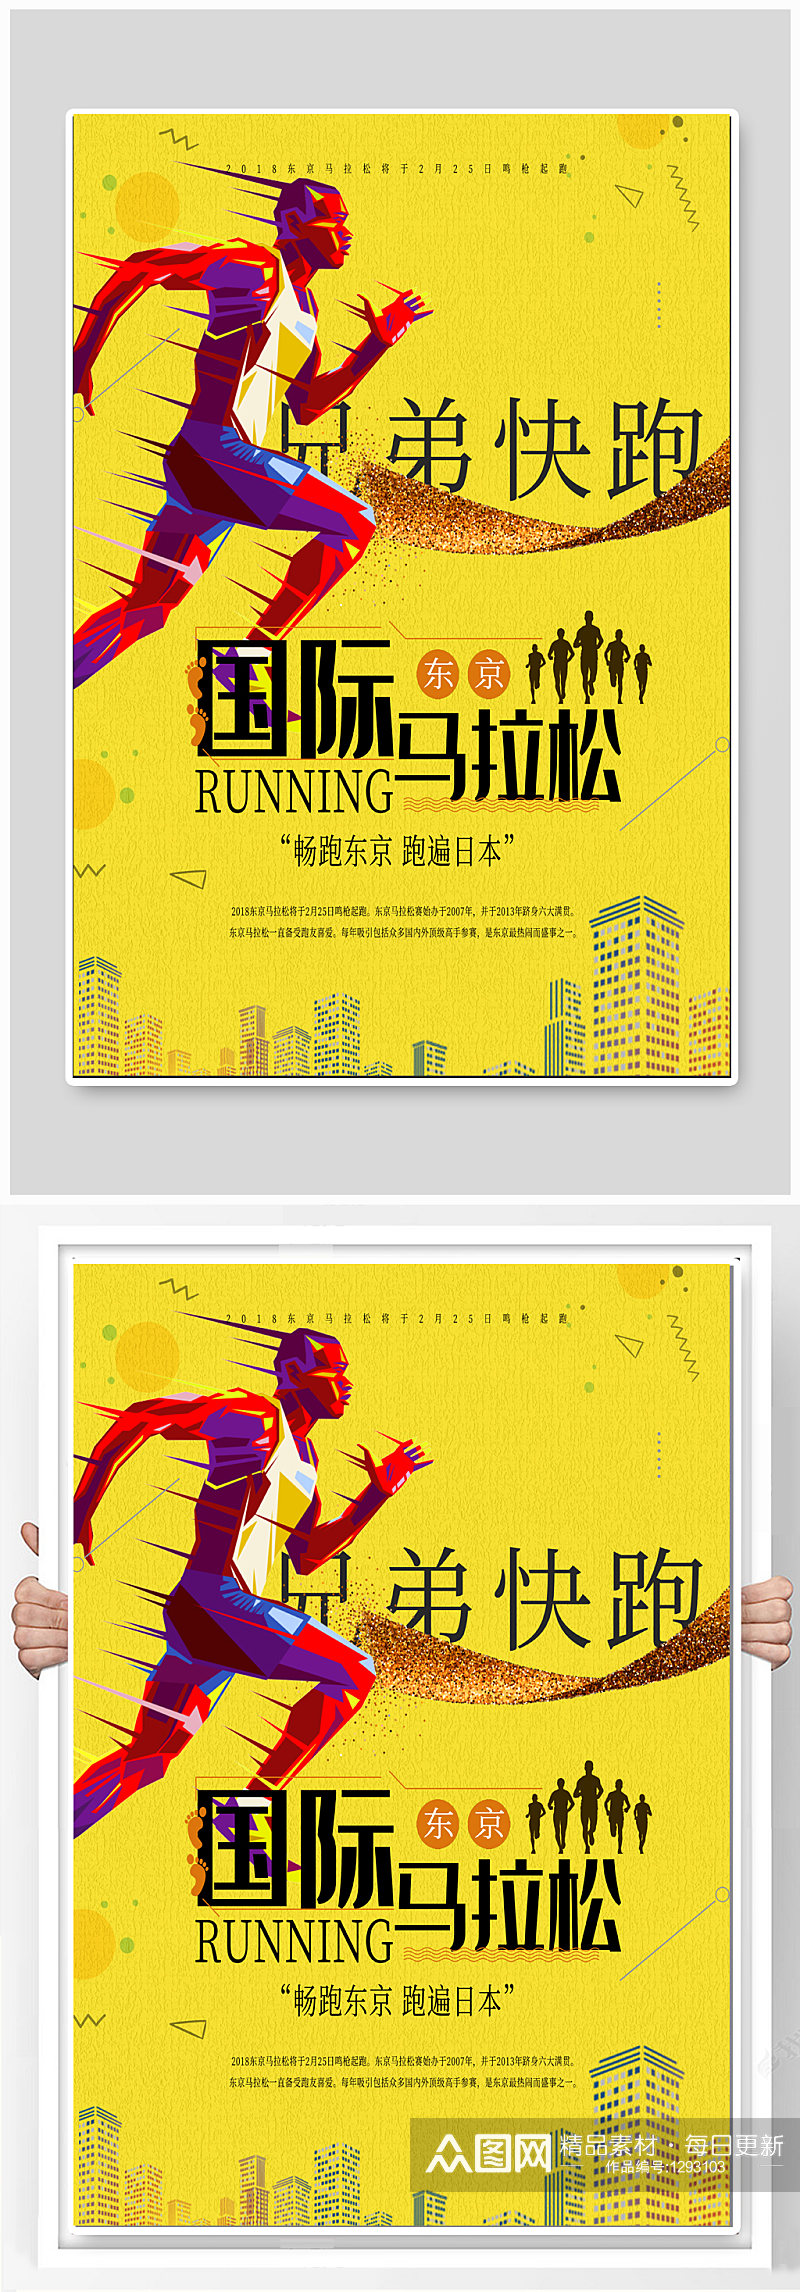 国际马拉松比赛海报素材